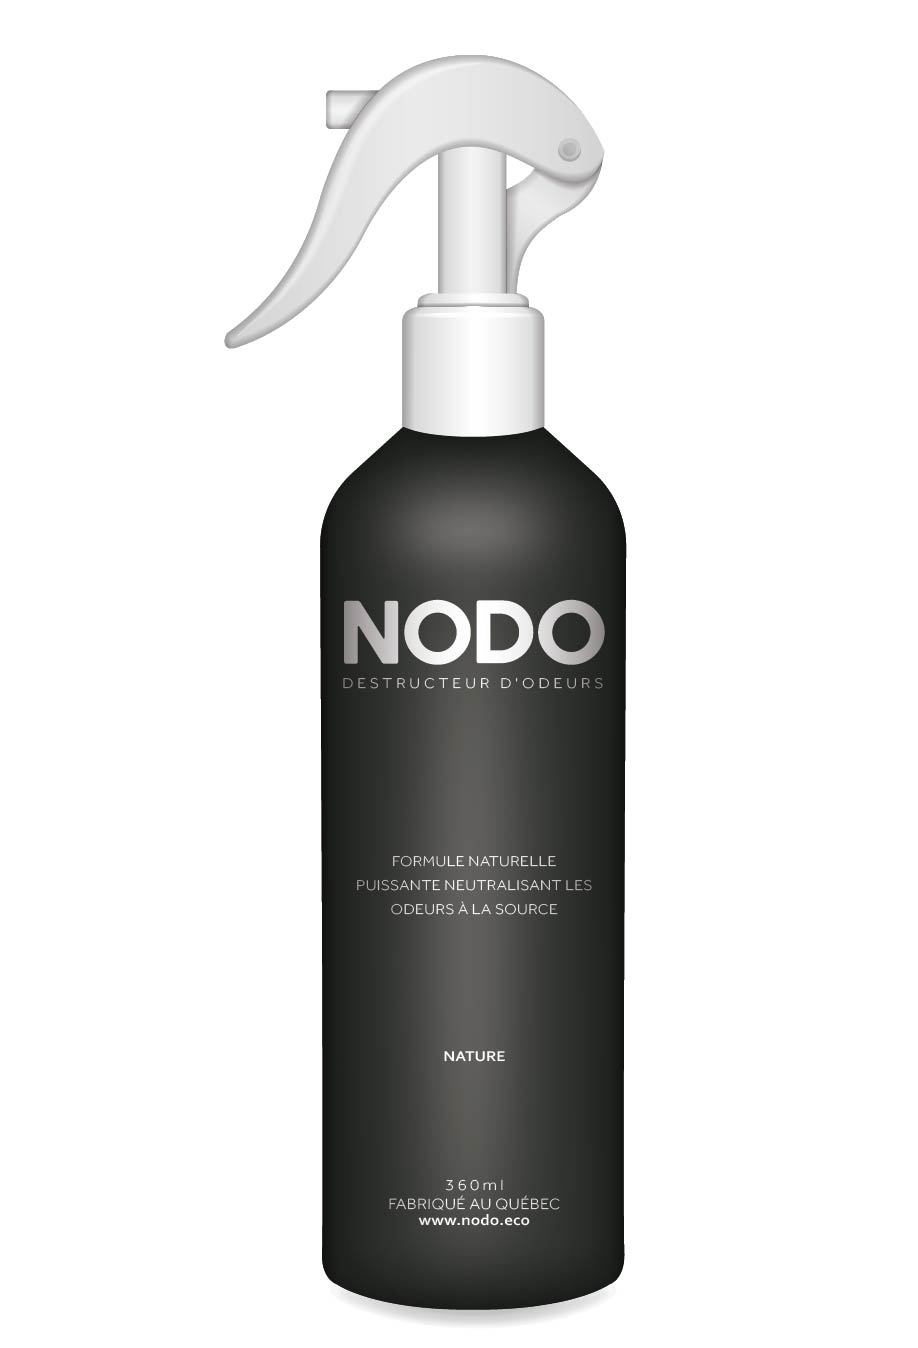 Vaporisateur neutralisant d'odeur NODO sans arôme ajouté